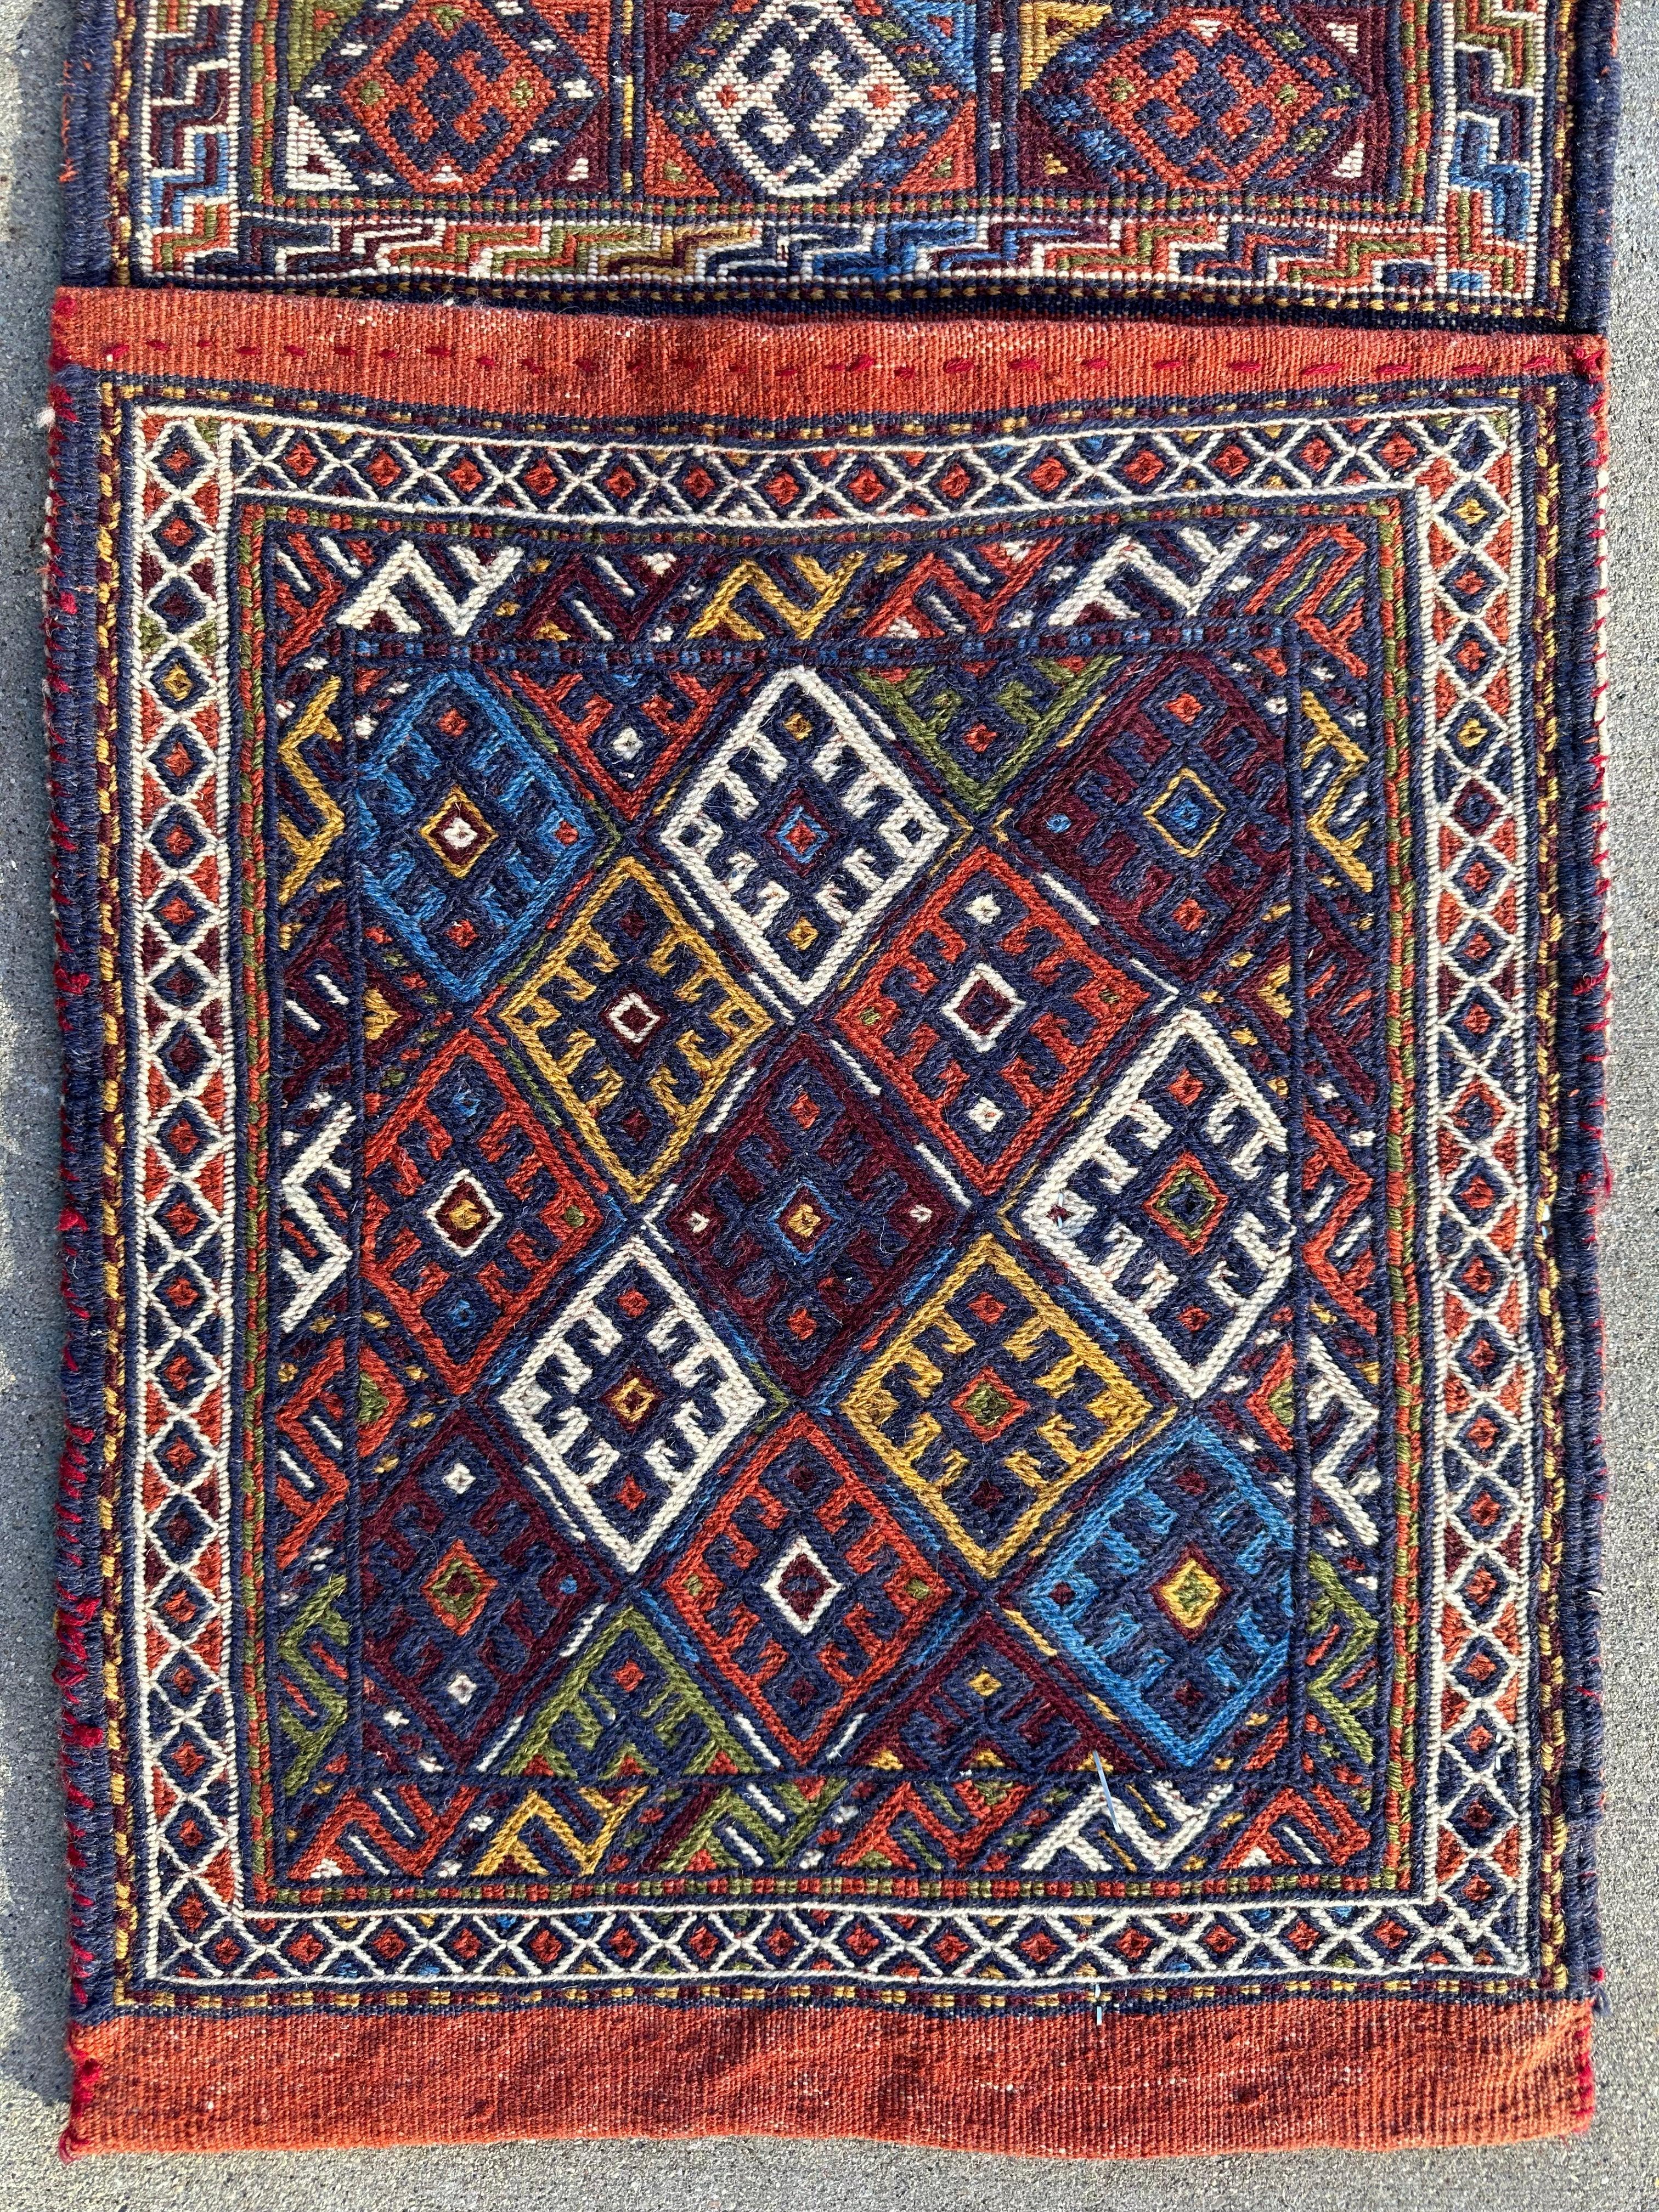 Exquisite Persian Qashqai Nomadic Vintage Khorjin ‘Saddle bag’